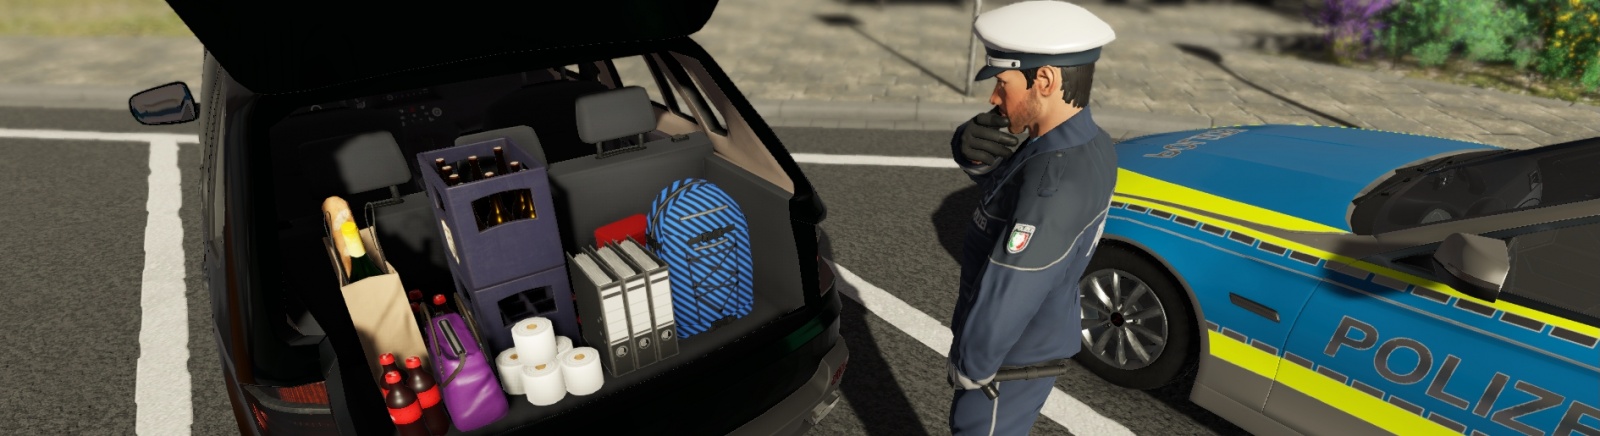 Дата выхода Autobahn Police Simulator 2  на PC, PS4 и Xbox One в России и во всем мире